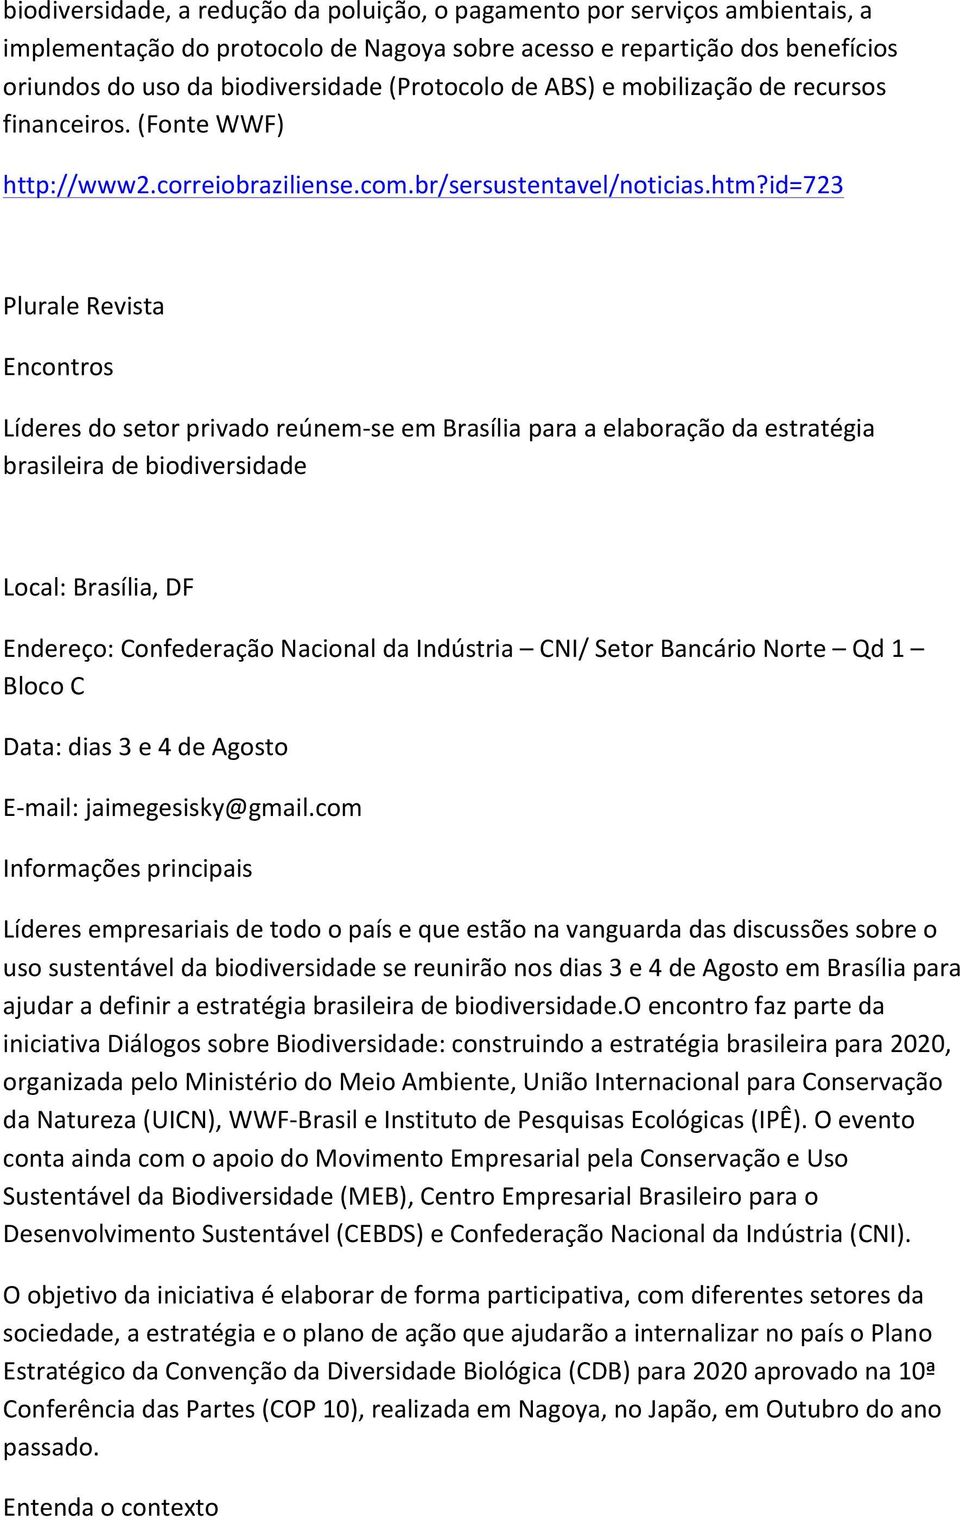 id=723 Plurale Revista Encontros Líderes do setor privado reúnem- se em Brasília para a elaboração da estratégia brasileira de biodiversidade Local: Brasília, DF Endereço: Confederação Nacional da